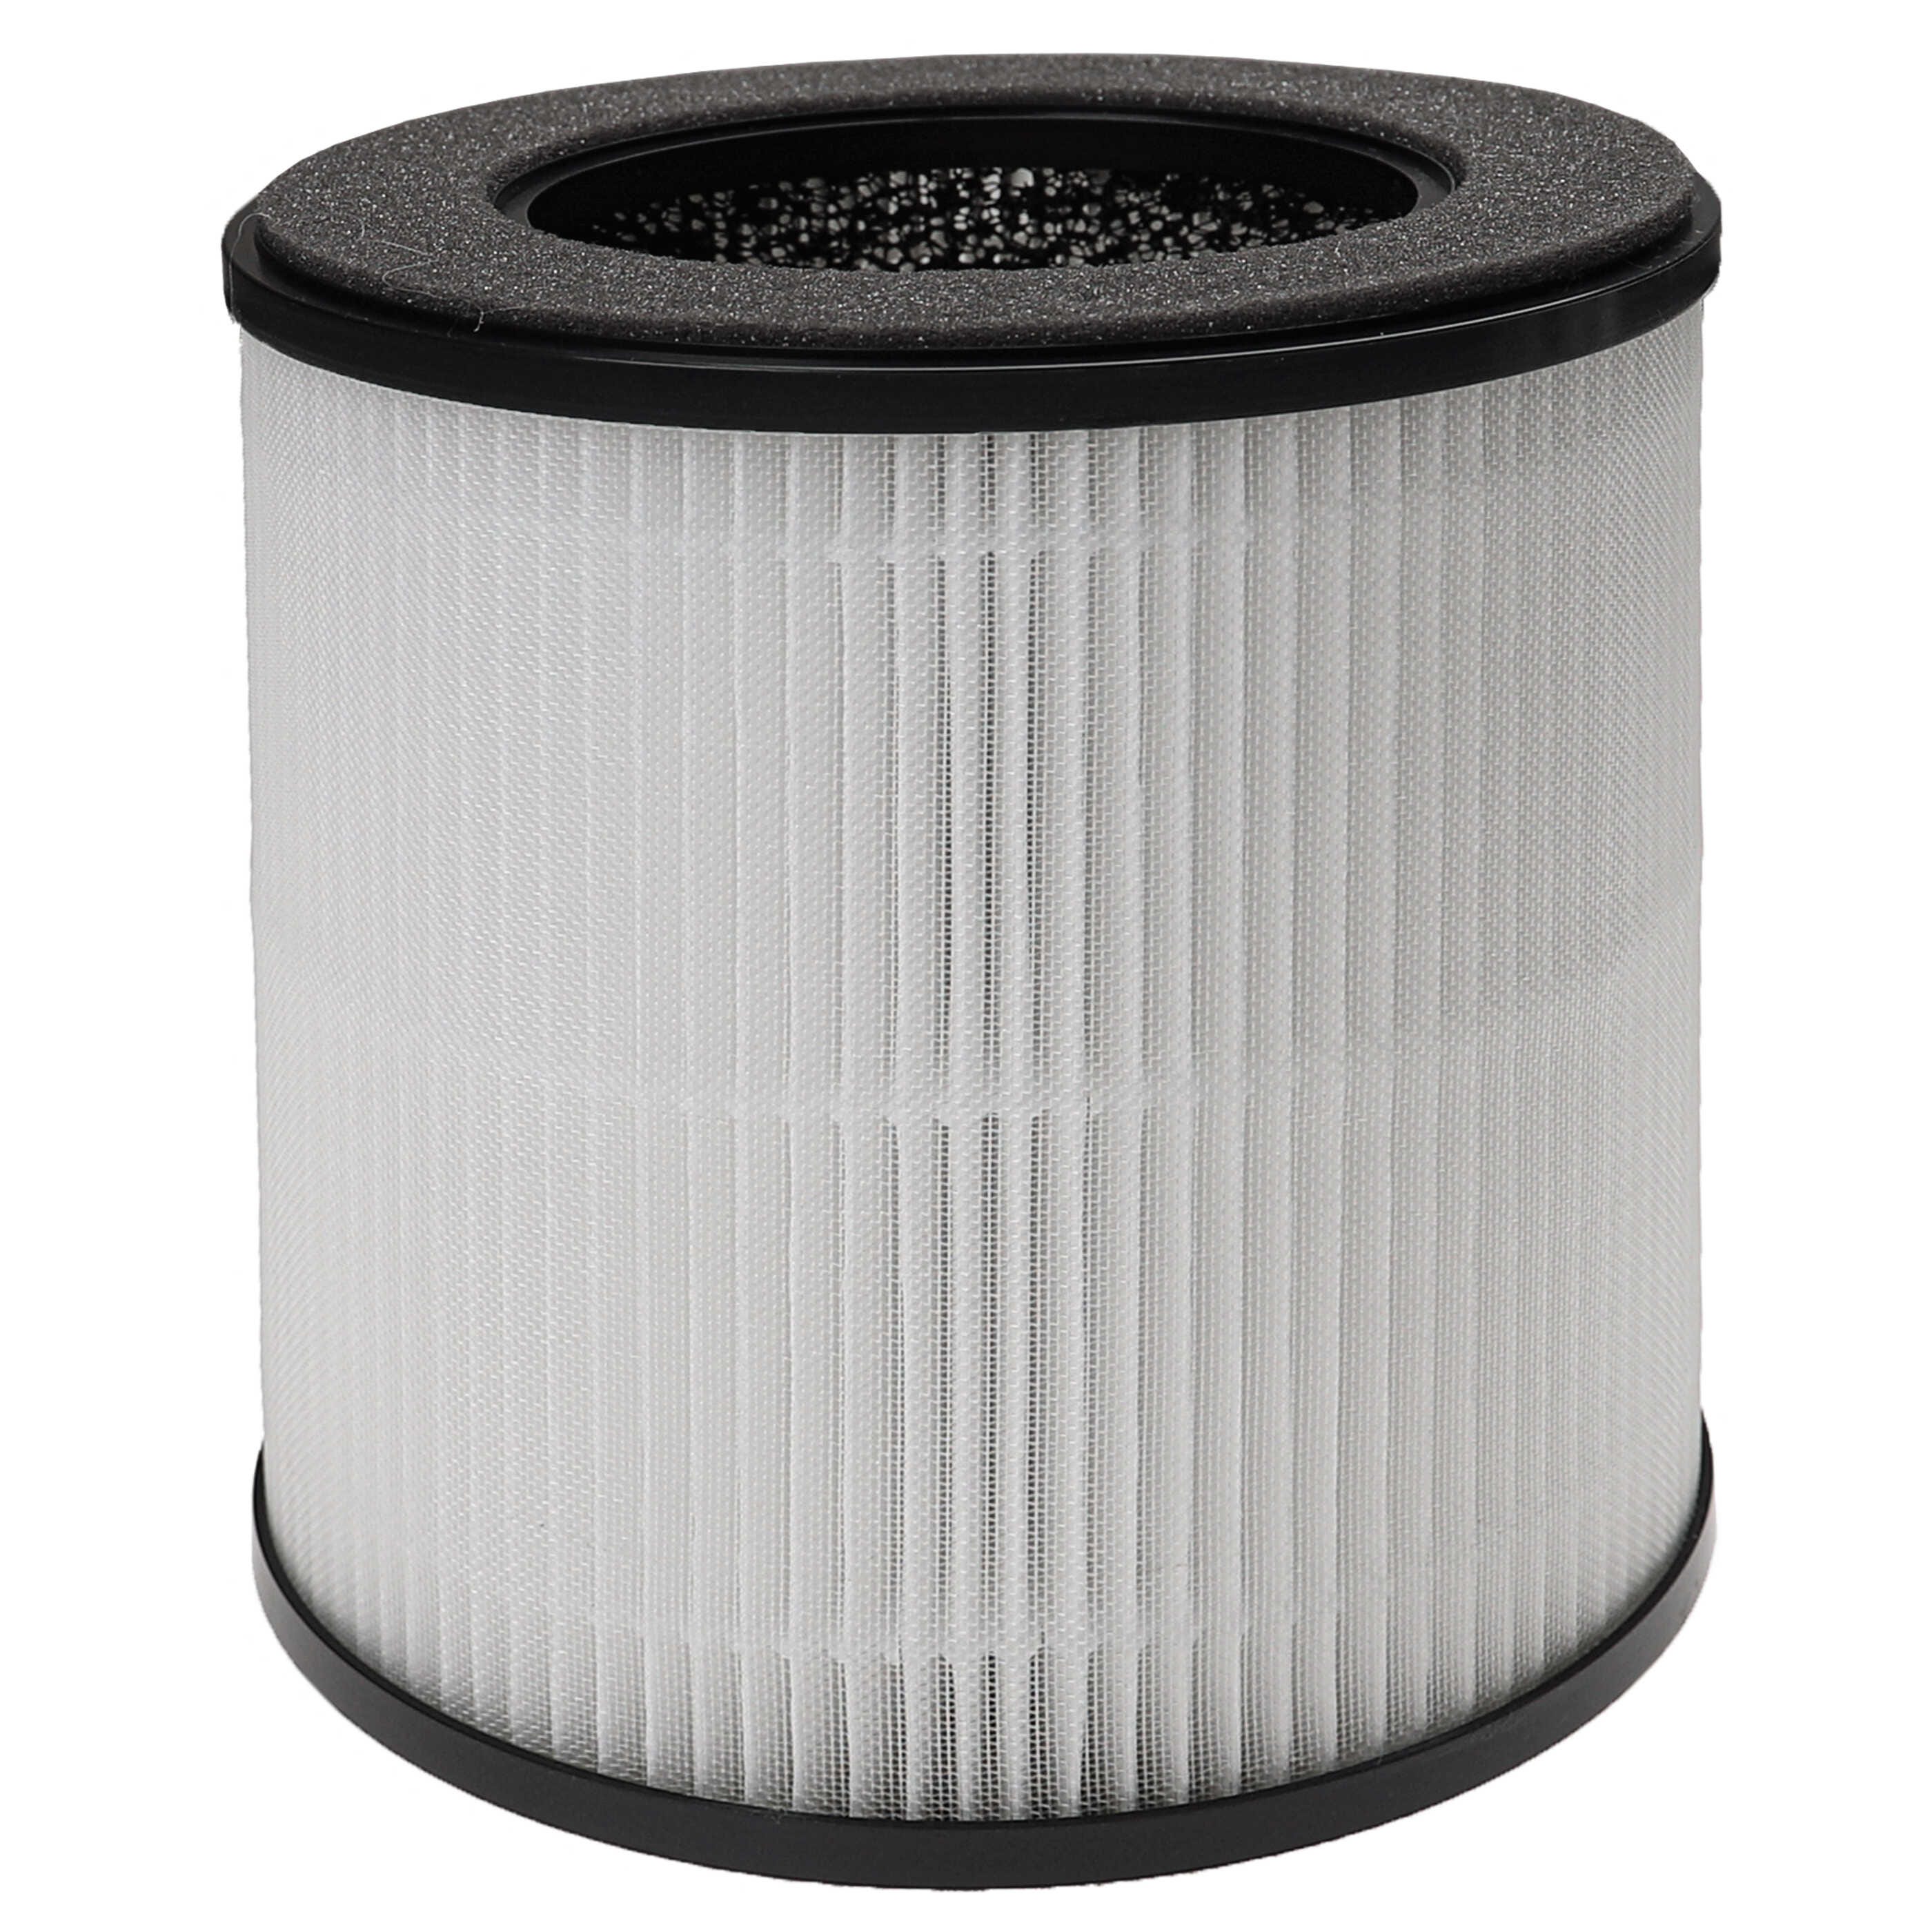 Vhbw Filtre à air compatible avec Acekool purificateur d'air - Filtre  combiné pré-filtre + HEPA 13 + charbon actif